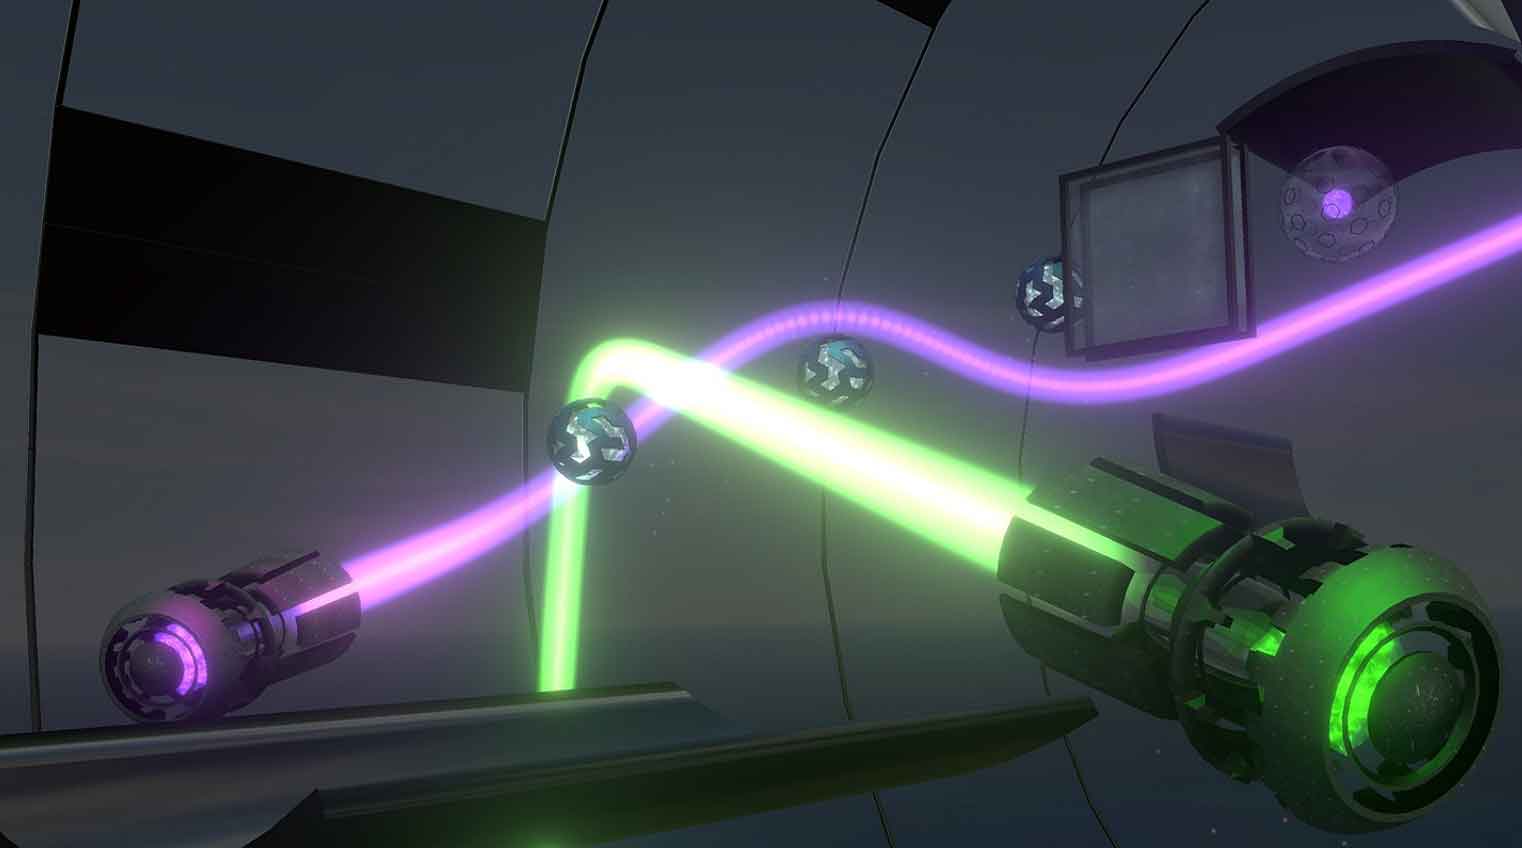 "Bending the Light" glänzt mit einer brillanten Spielidee, nutzt die Stärken der Virtual Reality und entfaltet eine meditative Wirkung.